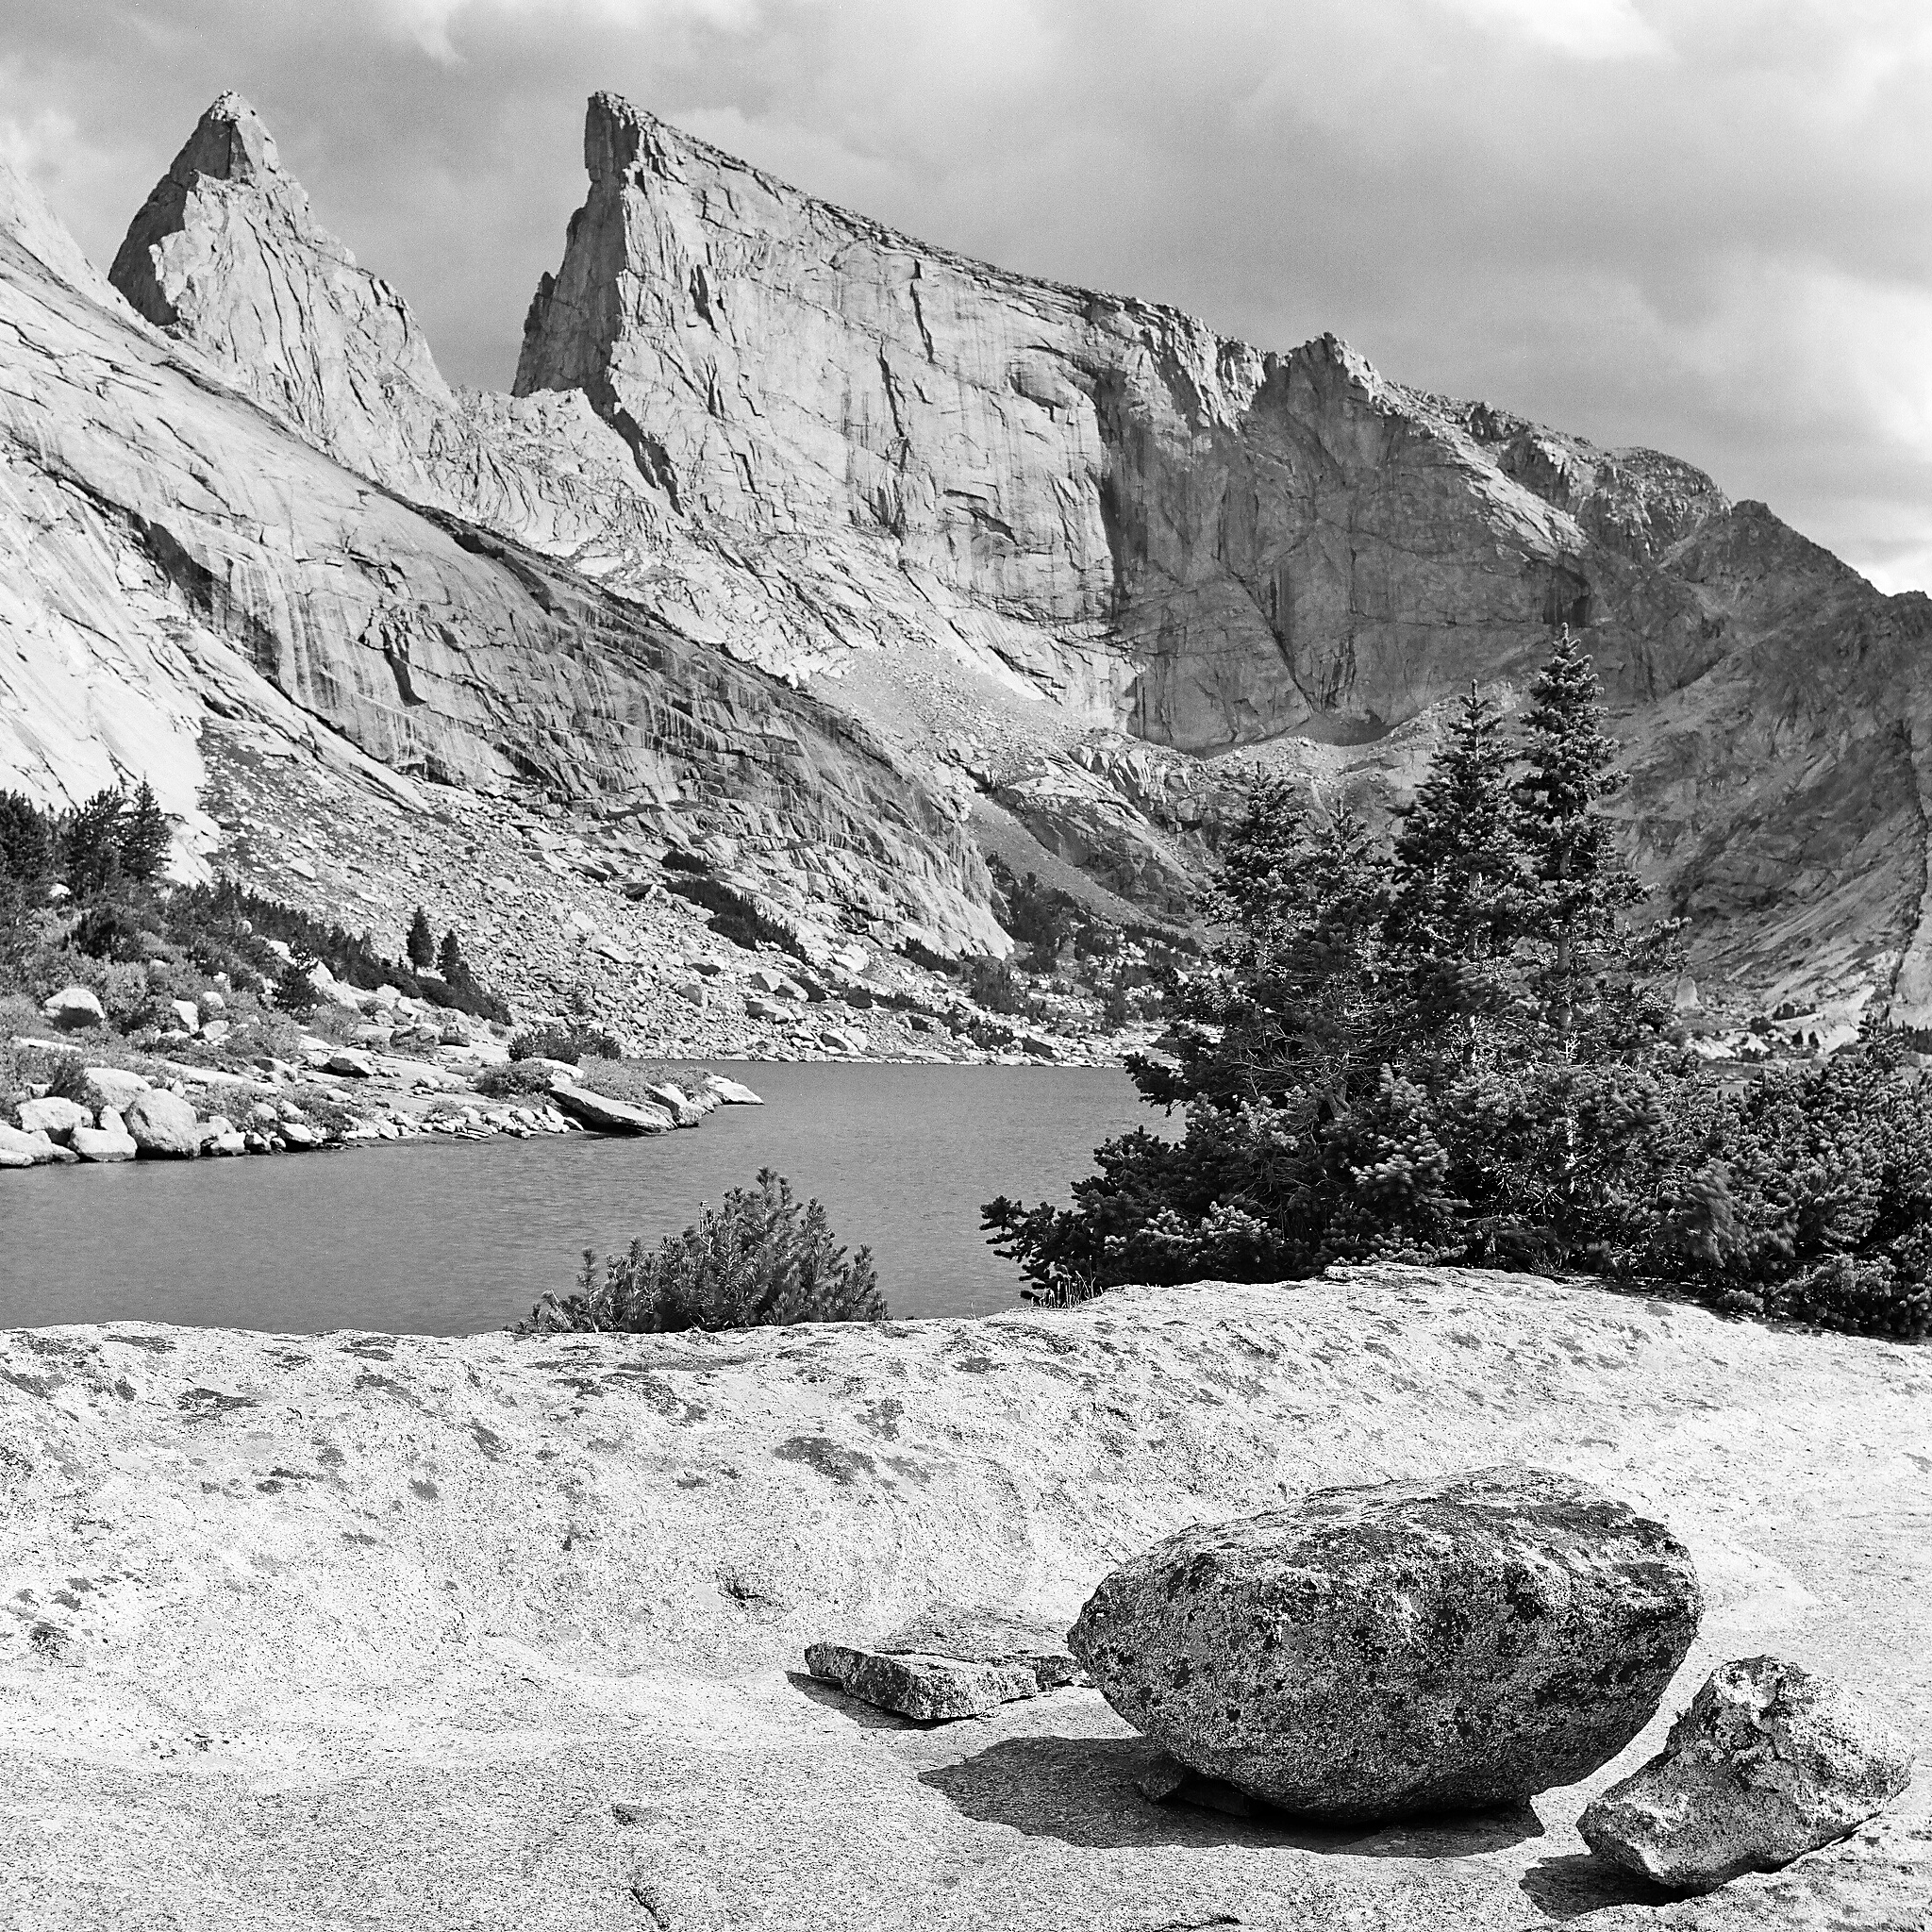  Deep Lake, Bridger Wilderness, Wyoming © 2015.  Image: Rolleiflex 2.8 F + Zeiss Planar 1:2.8/80mm. 